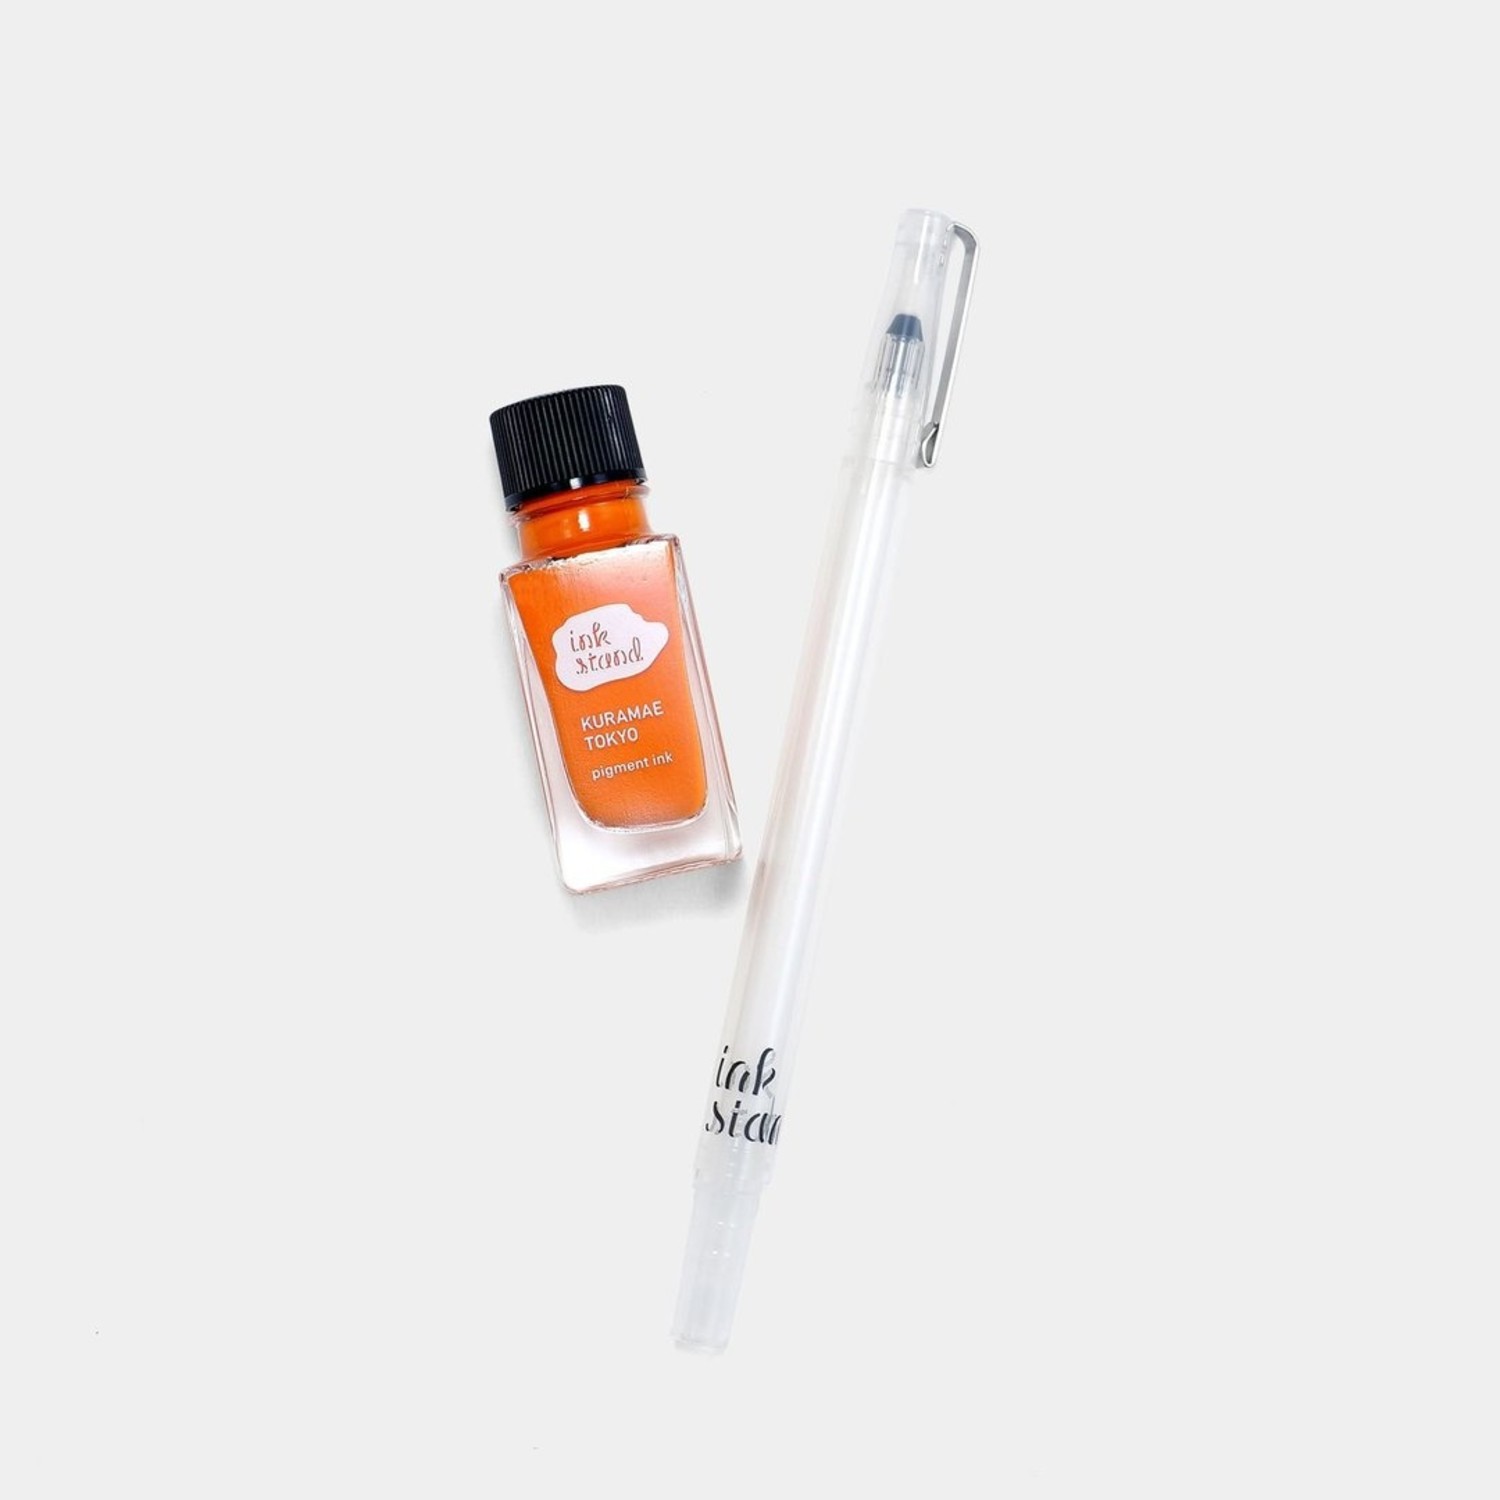 Kakimori Color Liner Kit Marker Pen